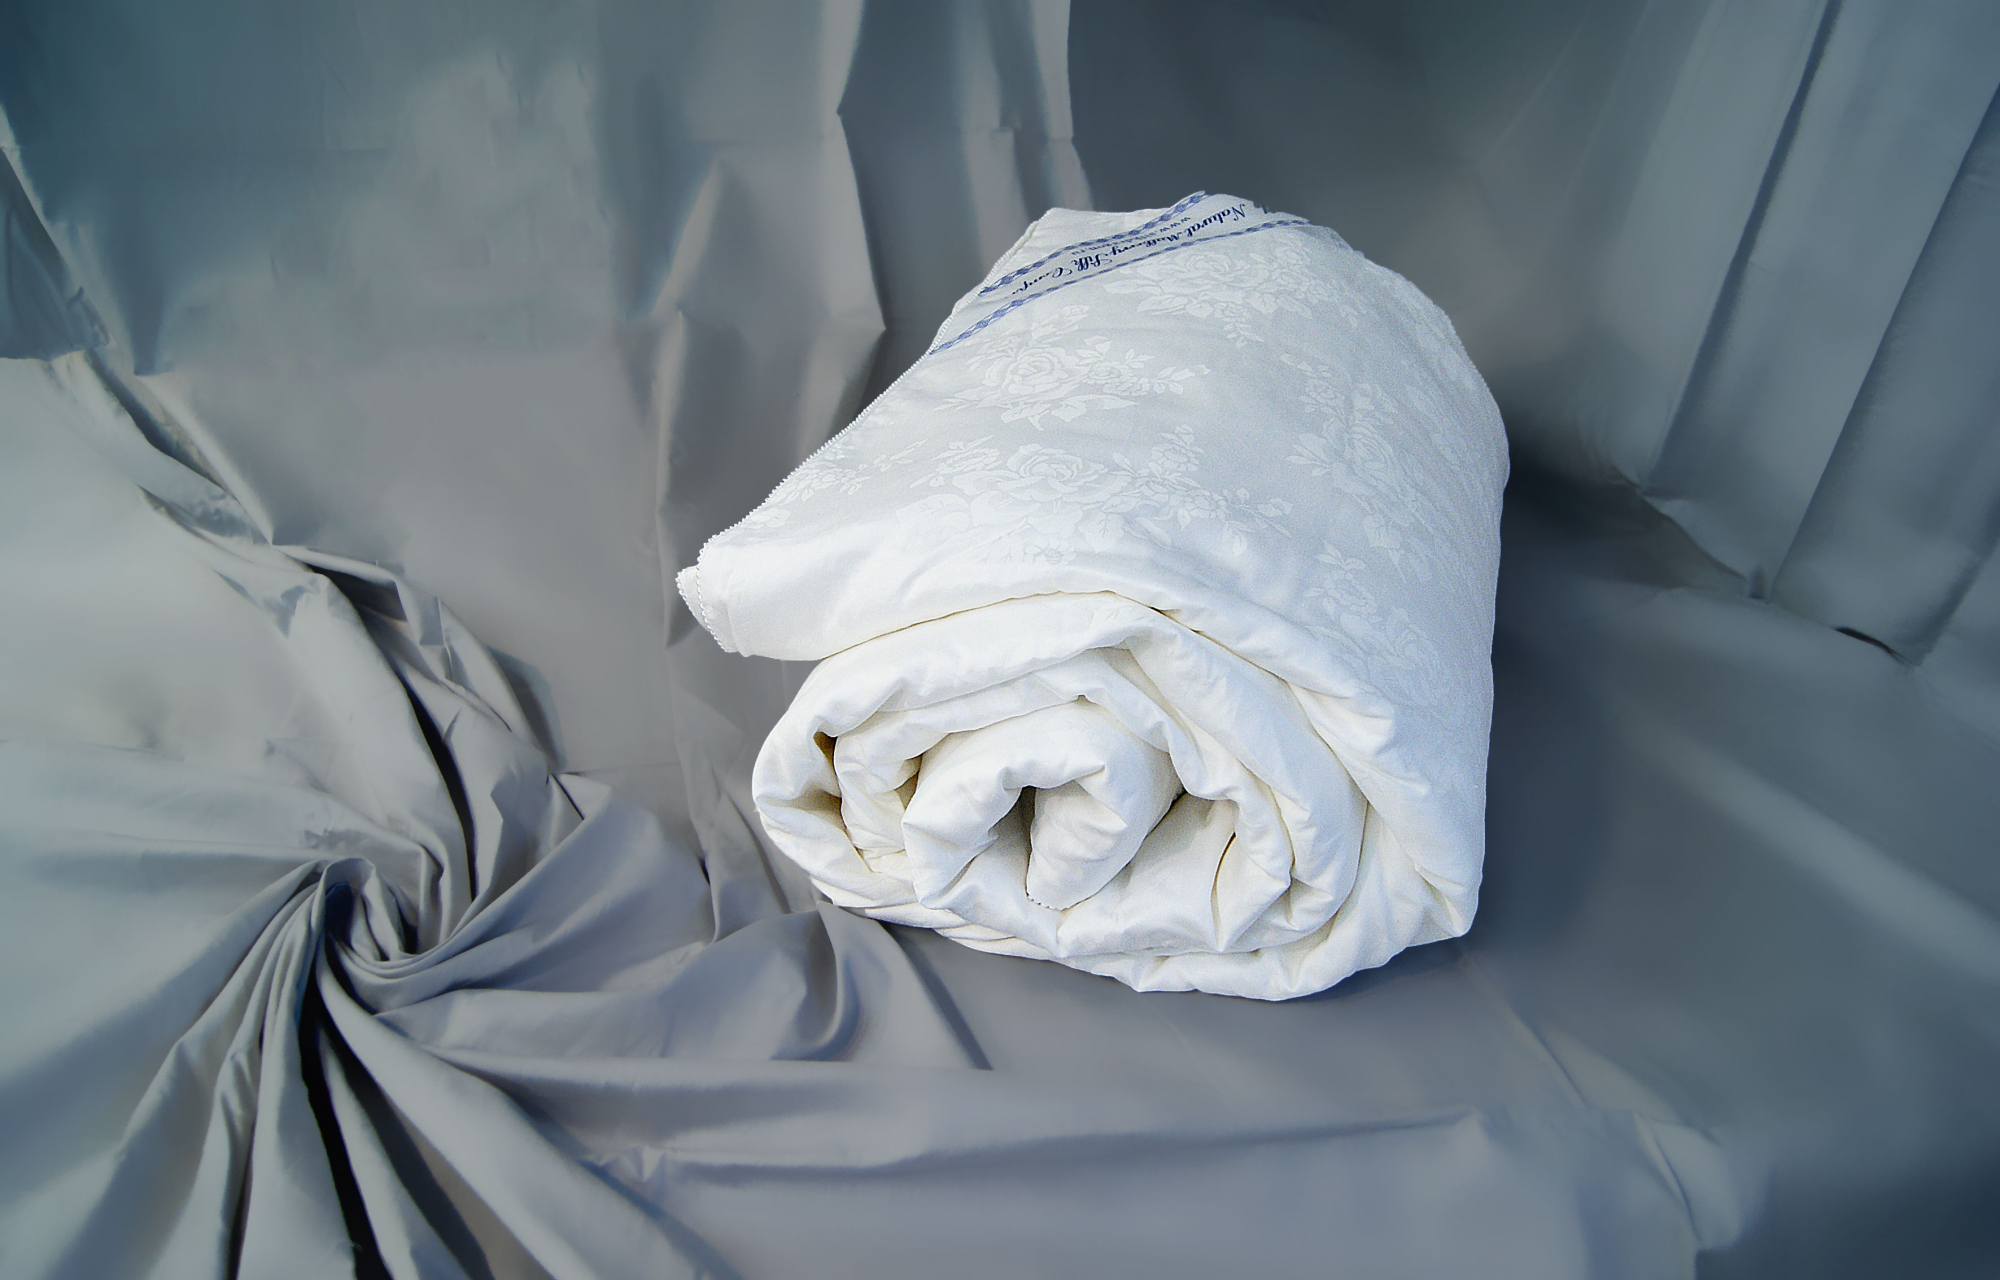 Как выбрать одеяло: какое лучше натуральное или синтетическое, виды одеял